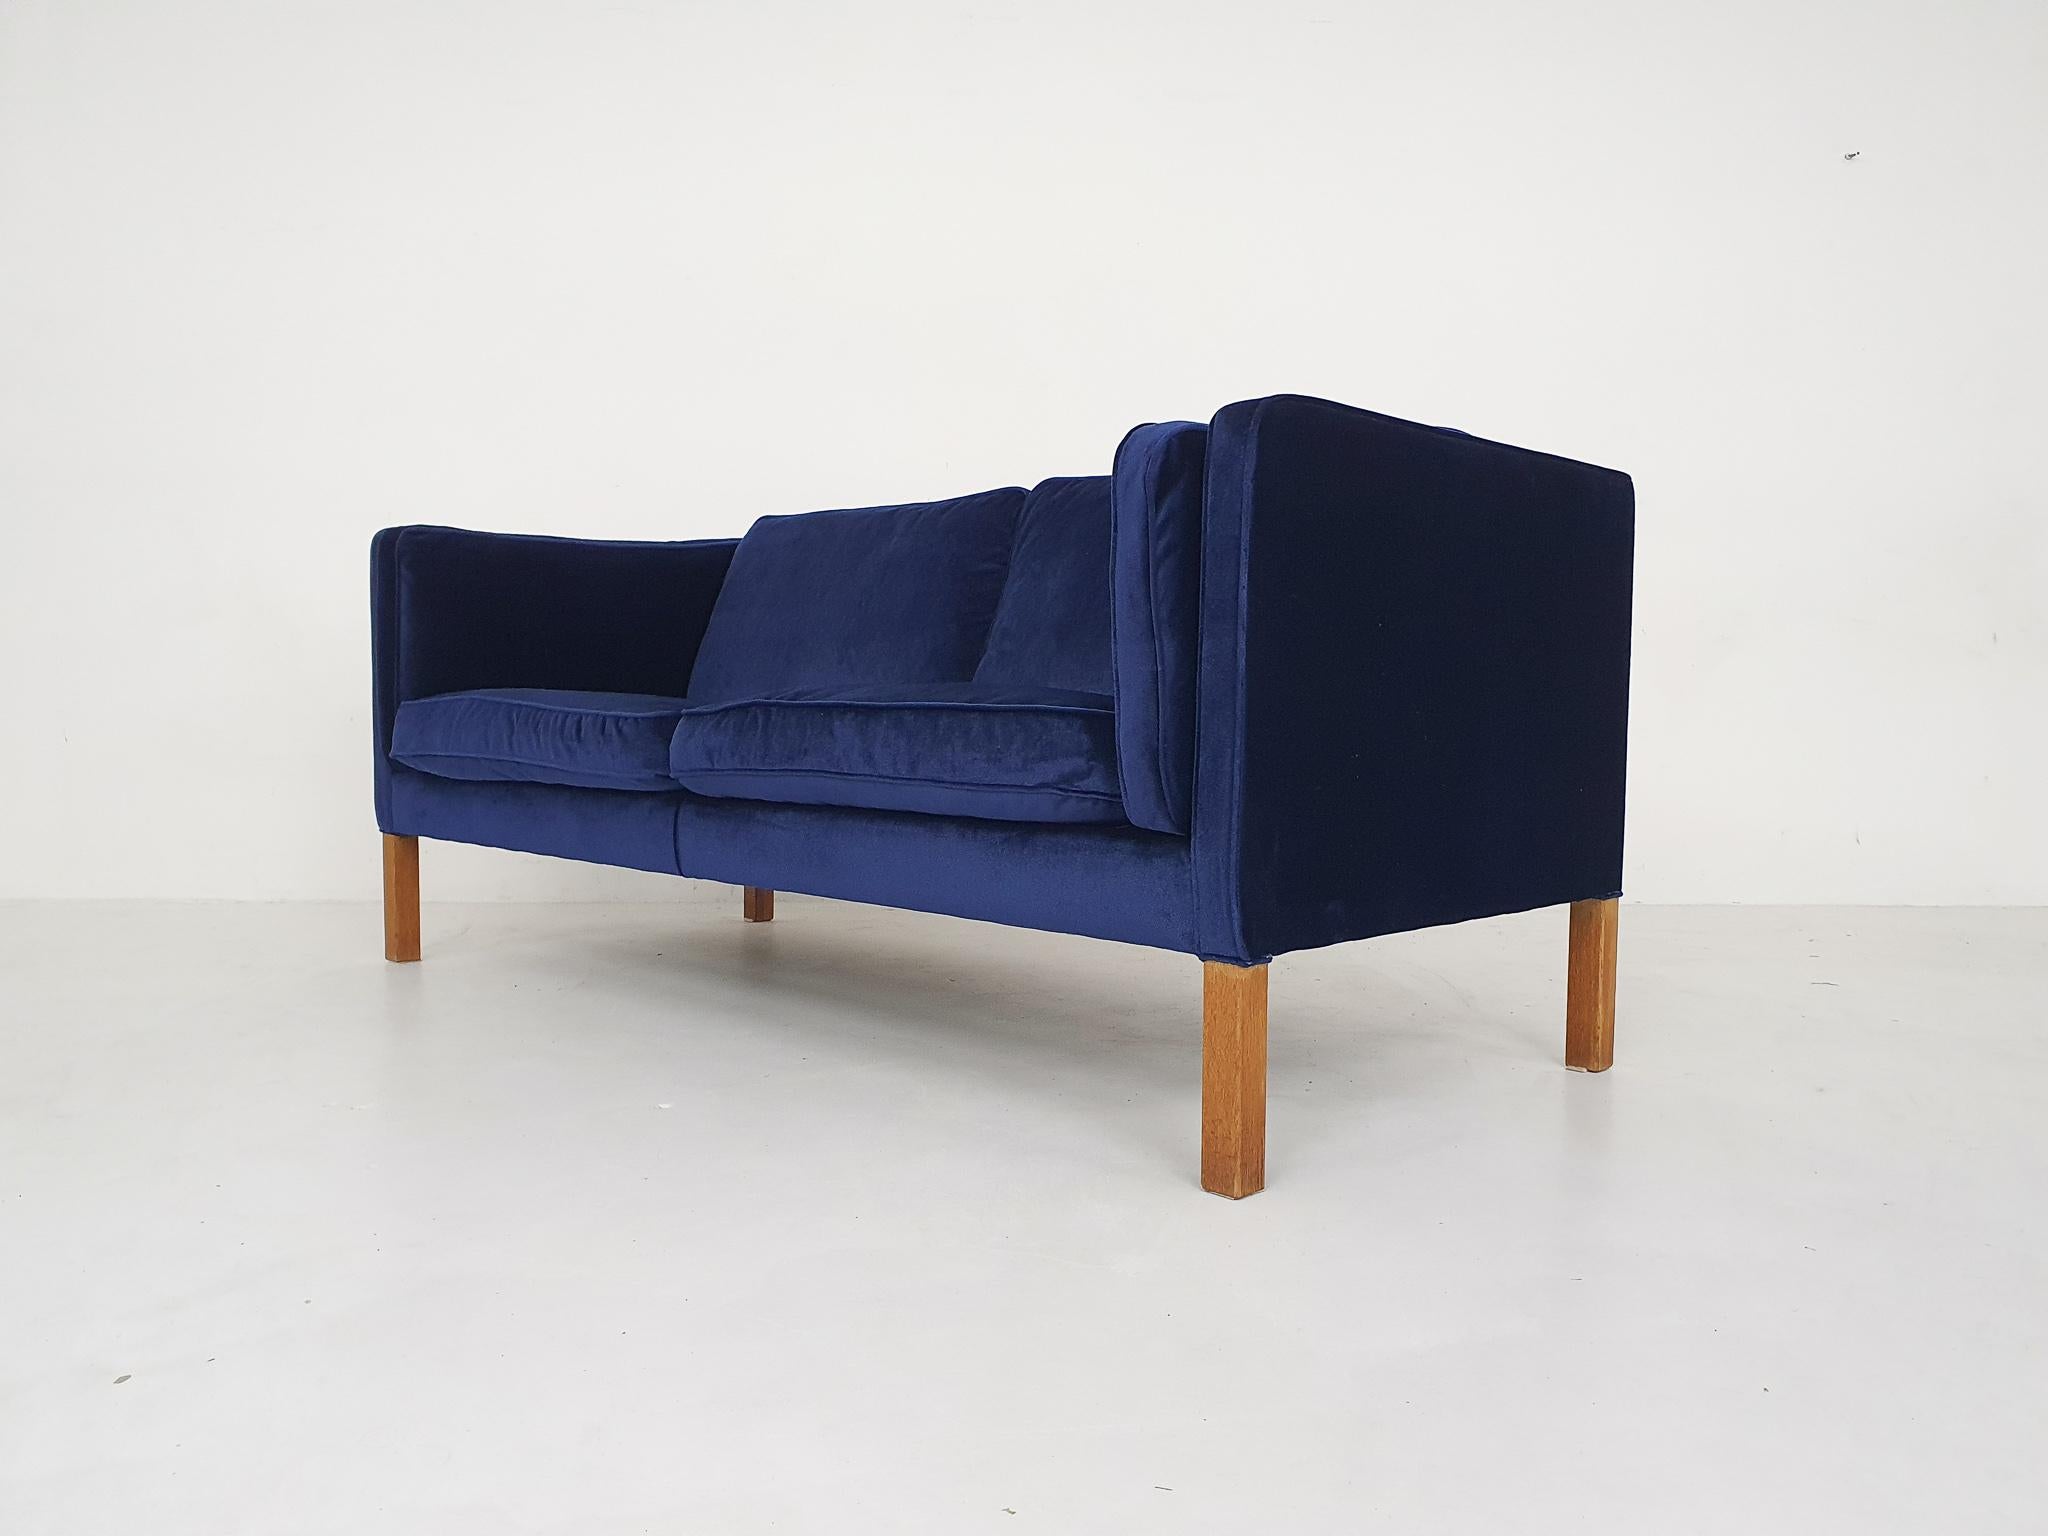 Un canapé design danois au look moderne, créé par le célèbre Børge Mogensen et son fils Peter. Conçu au Danemark en 1975.

Il s'agit d'un exemple unique, car il s'agit en fait d'une pièce vintage. Ce modèle est encore vendu aujourd'hui, mais cet